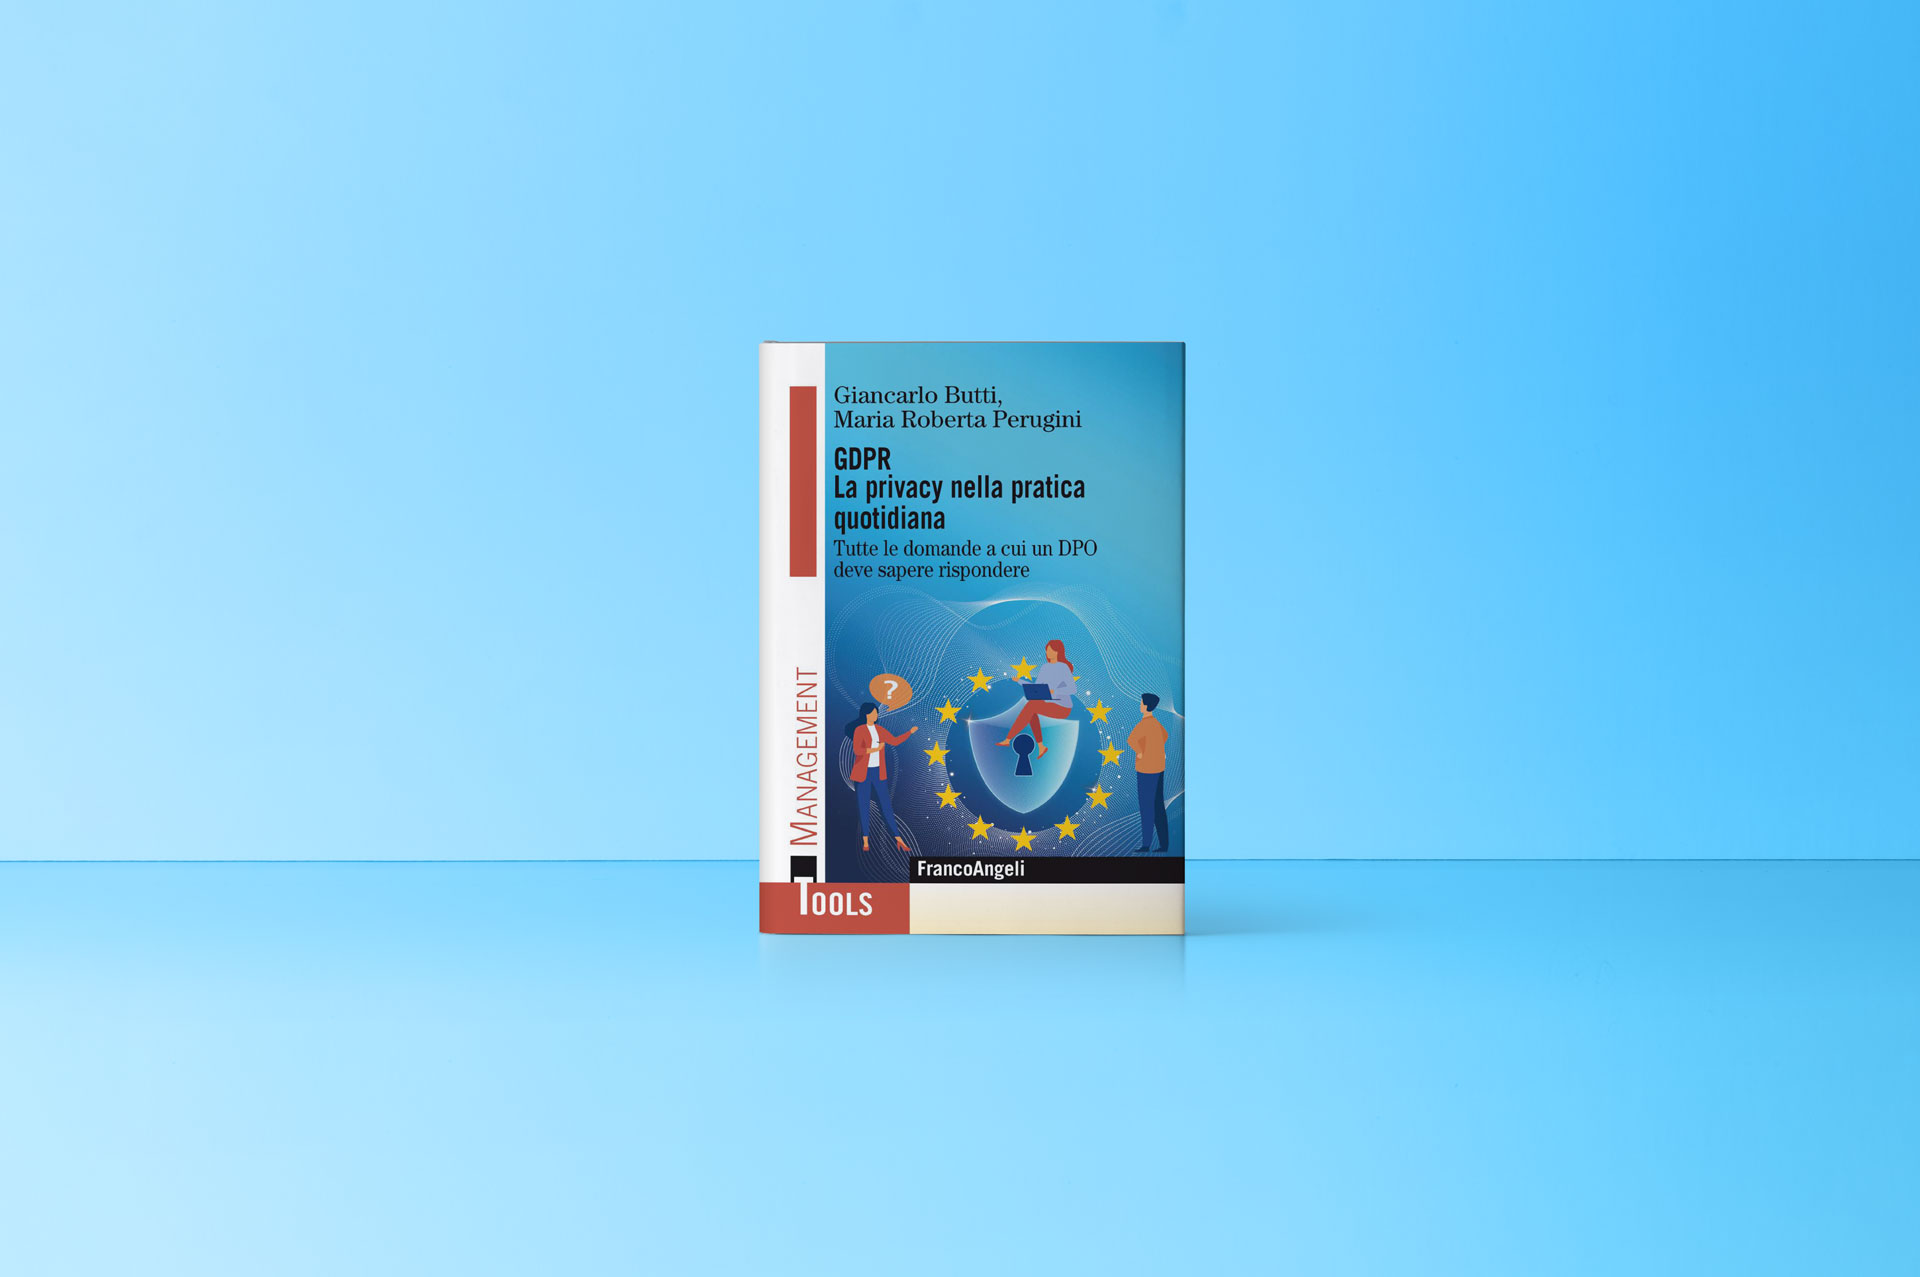 Presentazione del libro “GDPR – Tutte le domande a cui un DPO deve sapere rispondere”